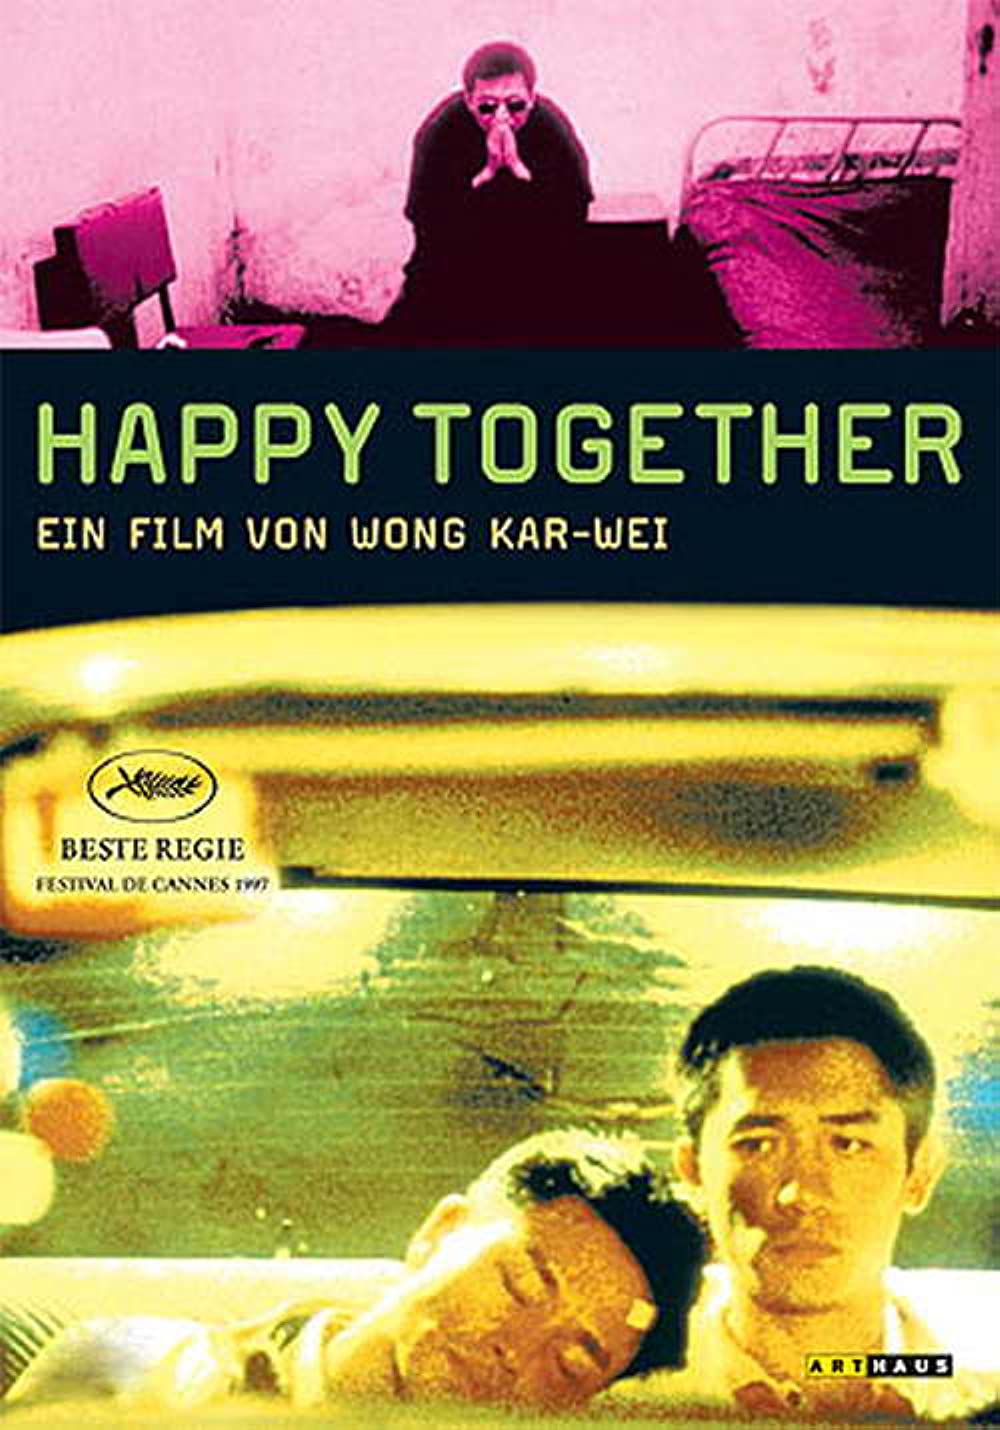 Filmbeschreibung zu Happy Together